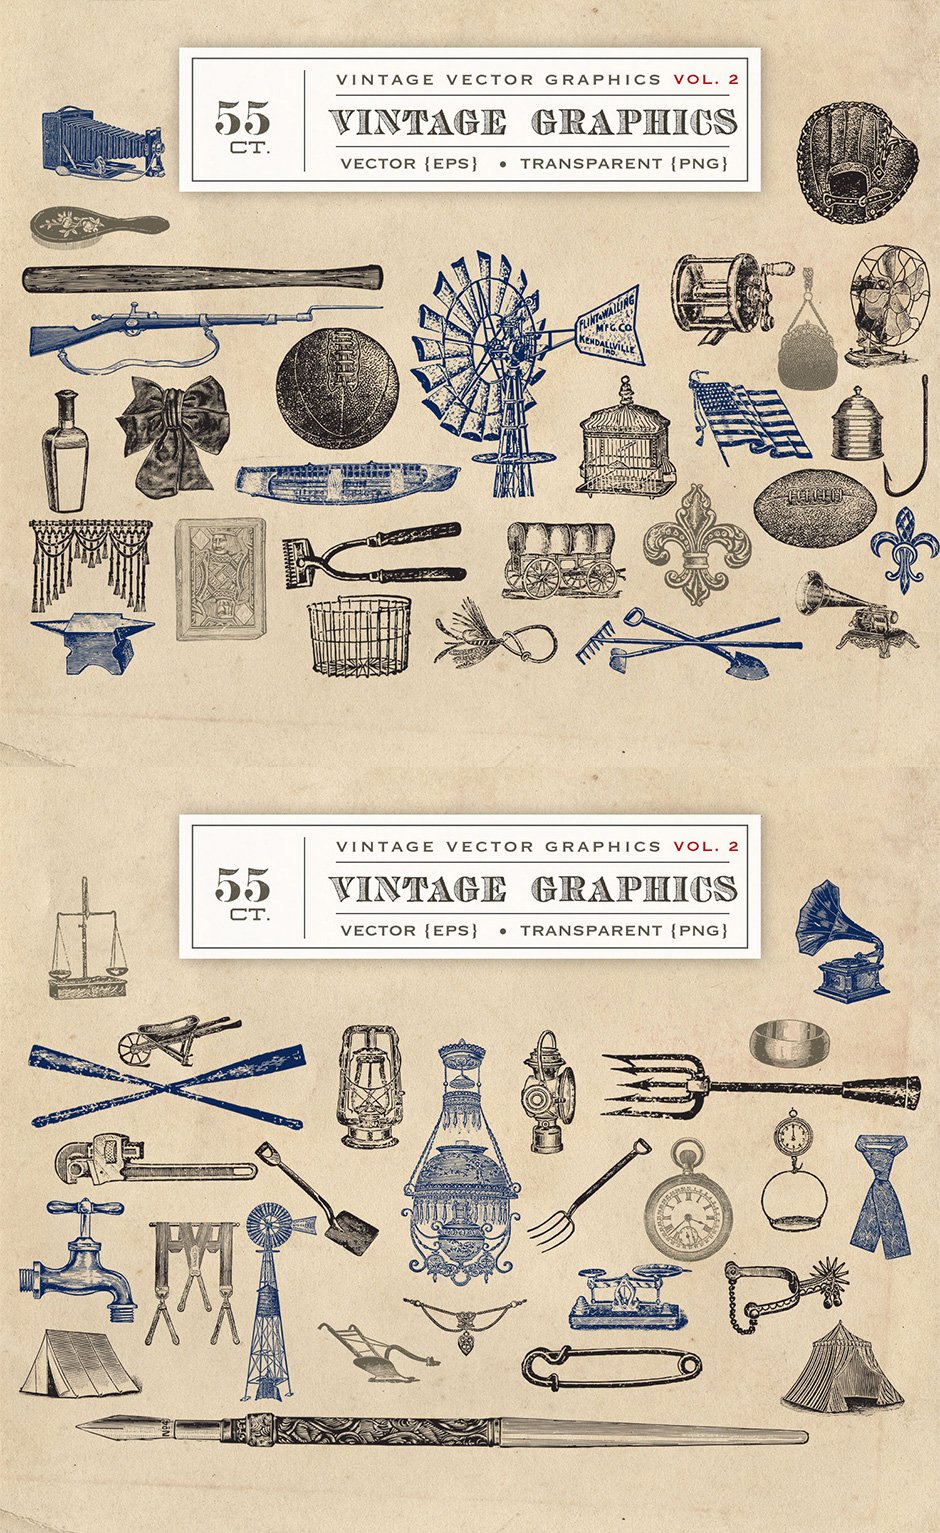 55 Vintage Vector Graphics Vol. 2